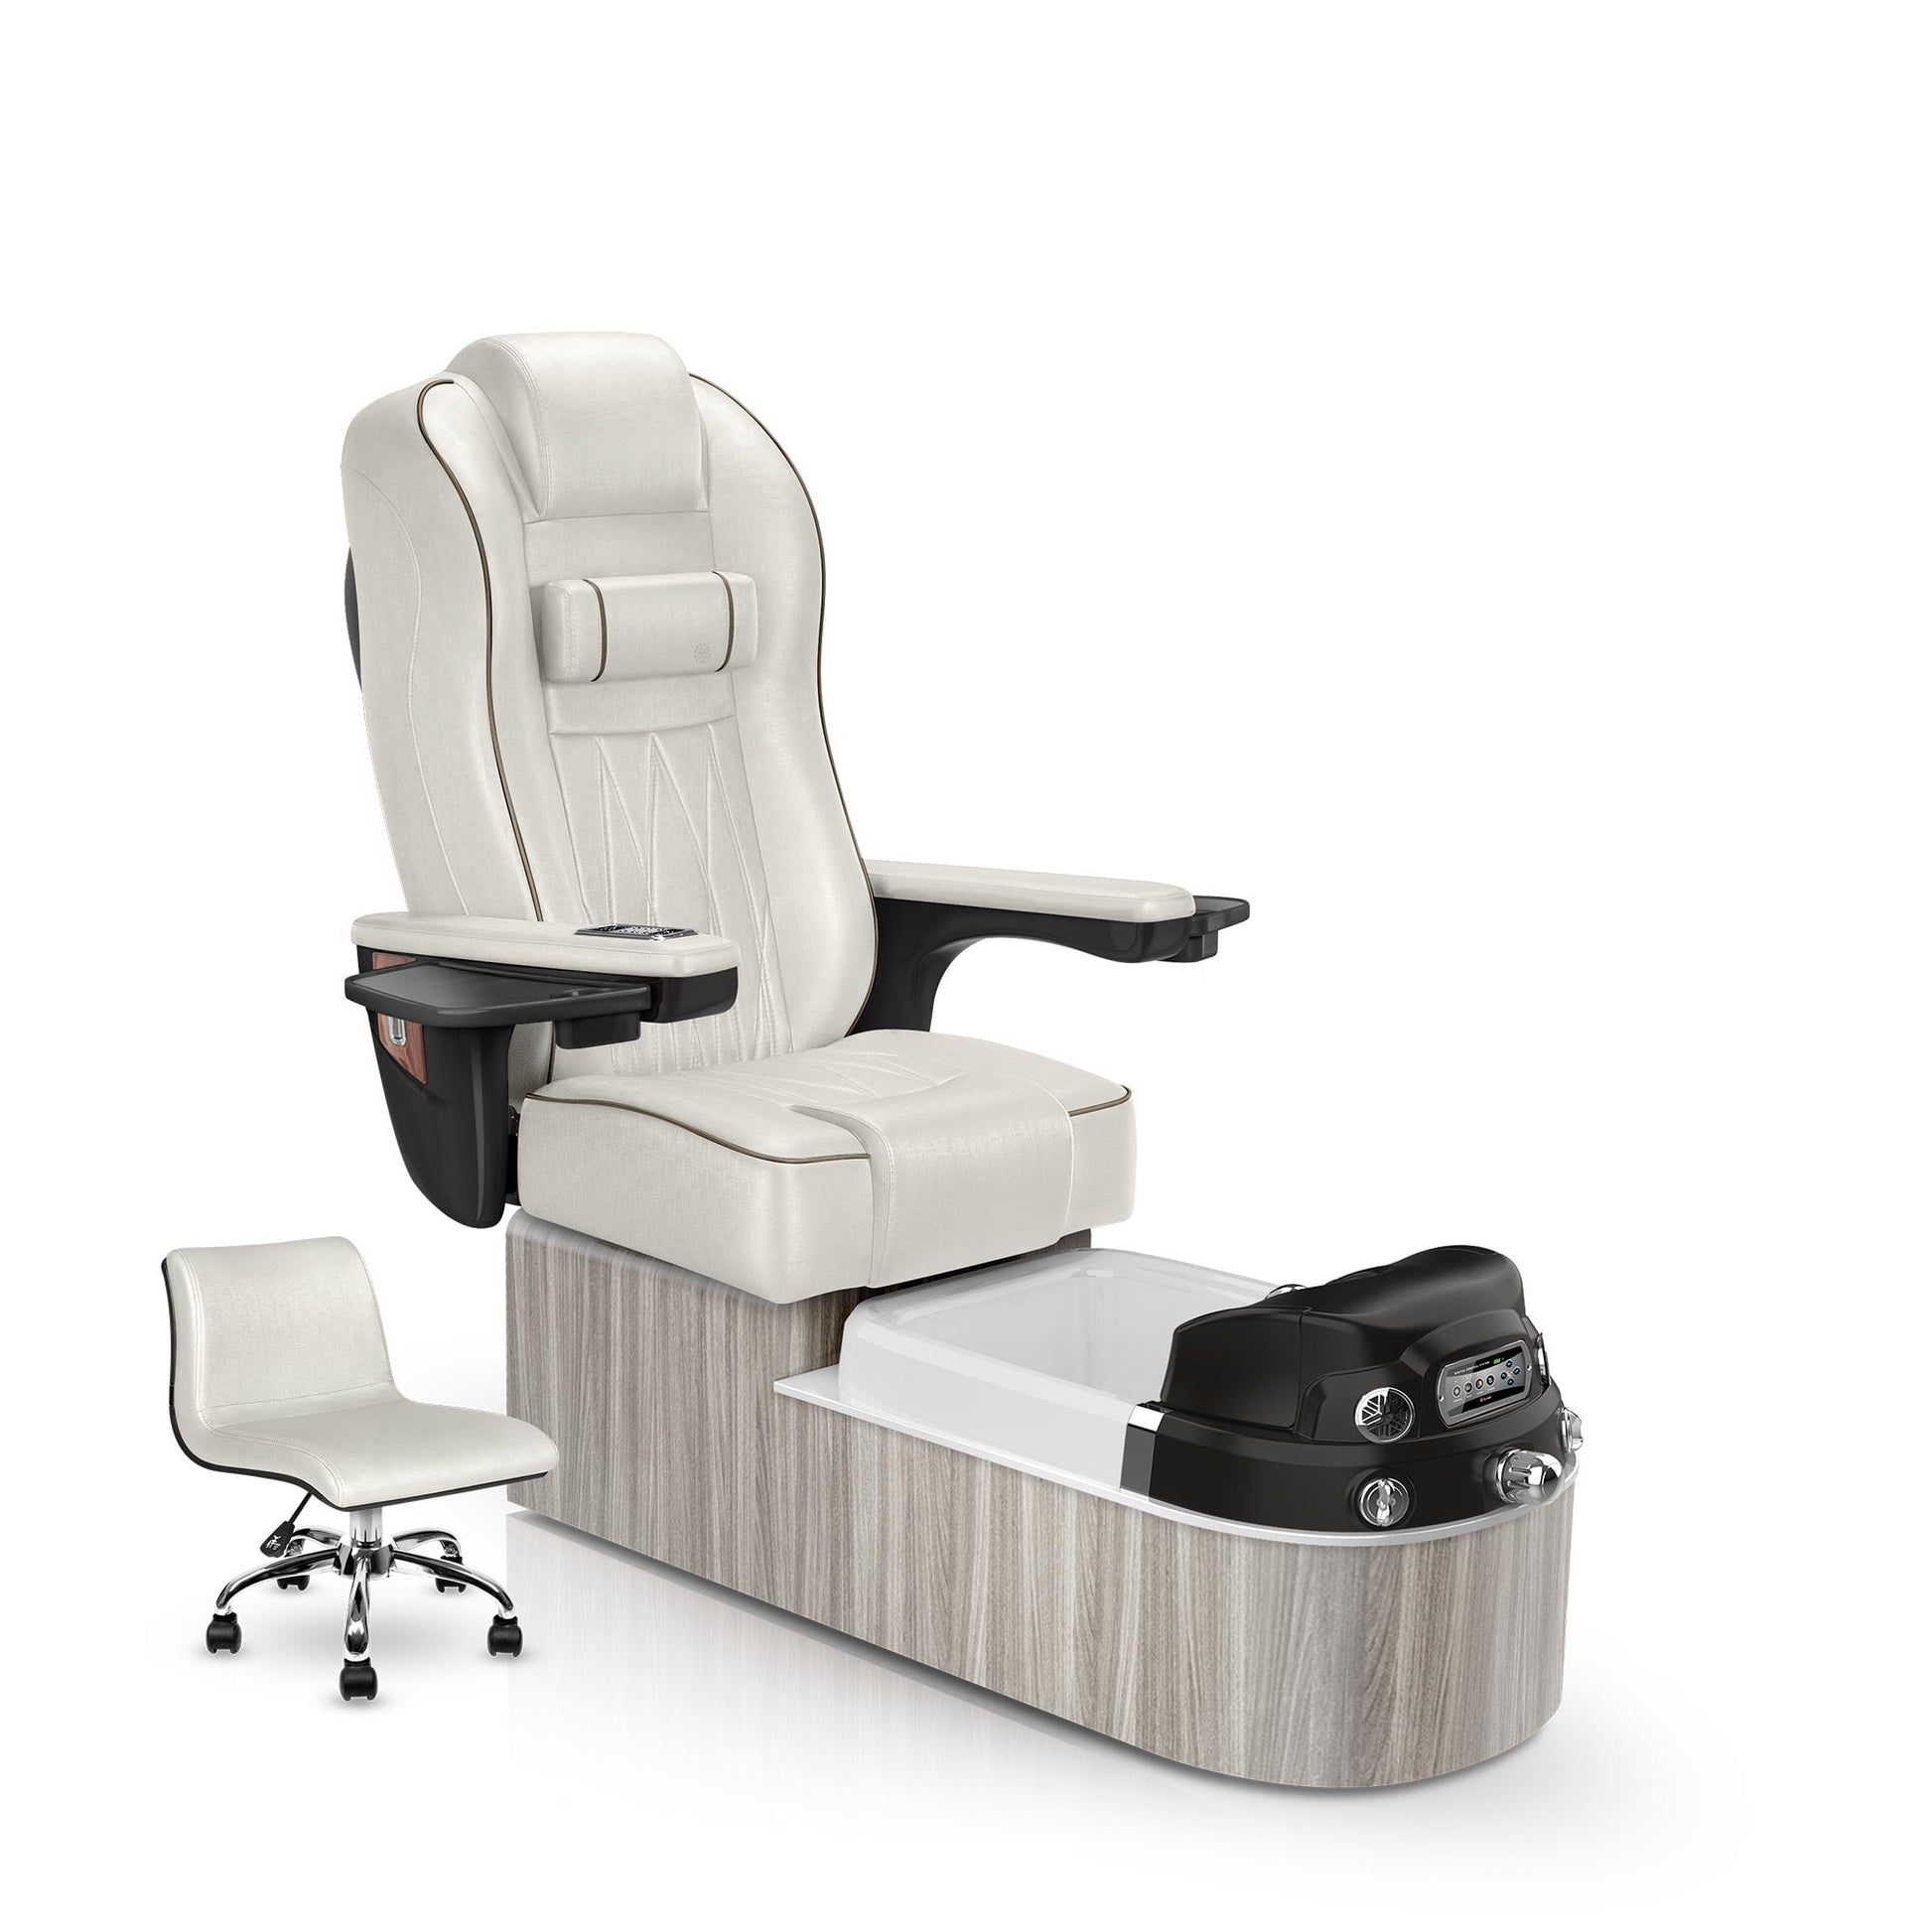 Lexor Envision pedicure chair opal cushion and hazel base